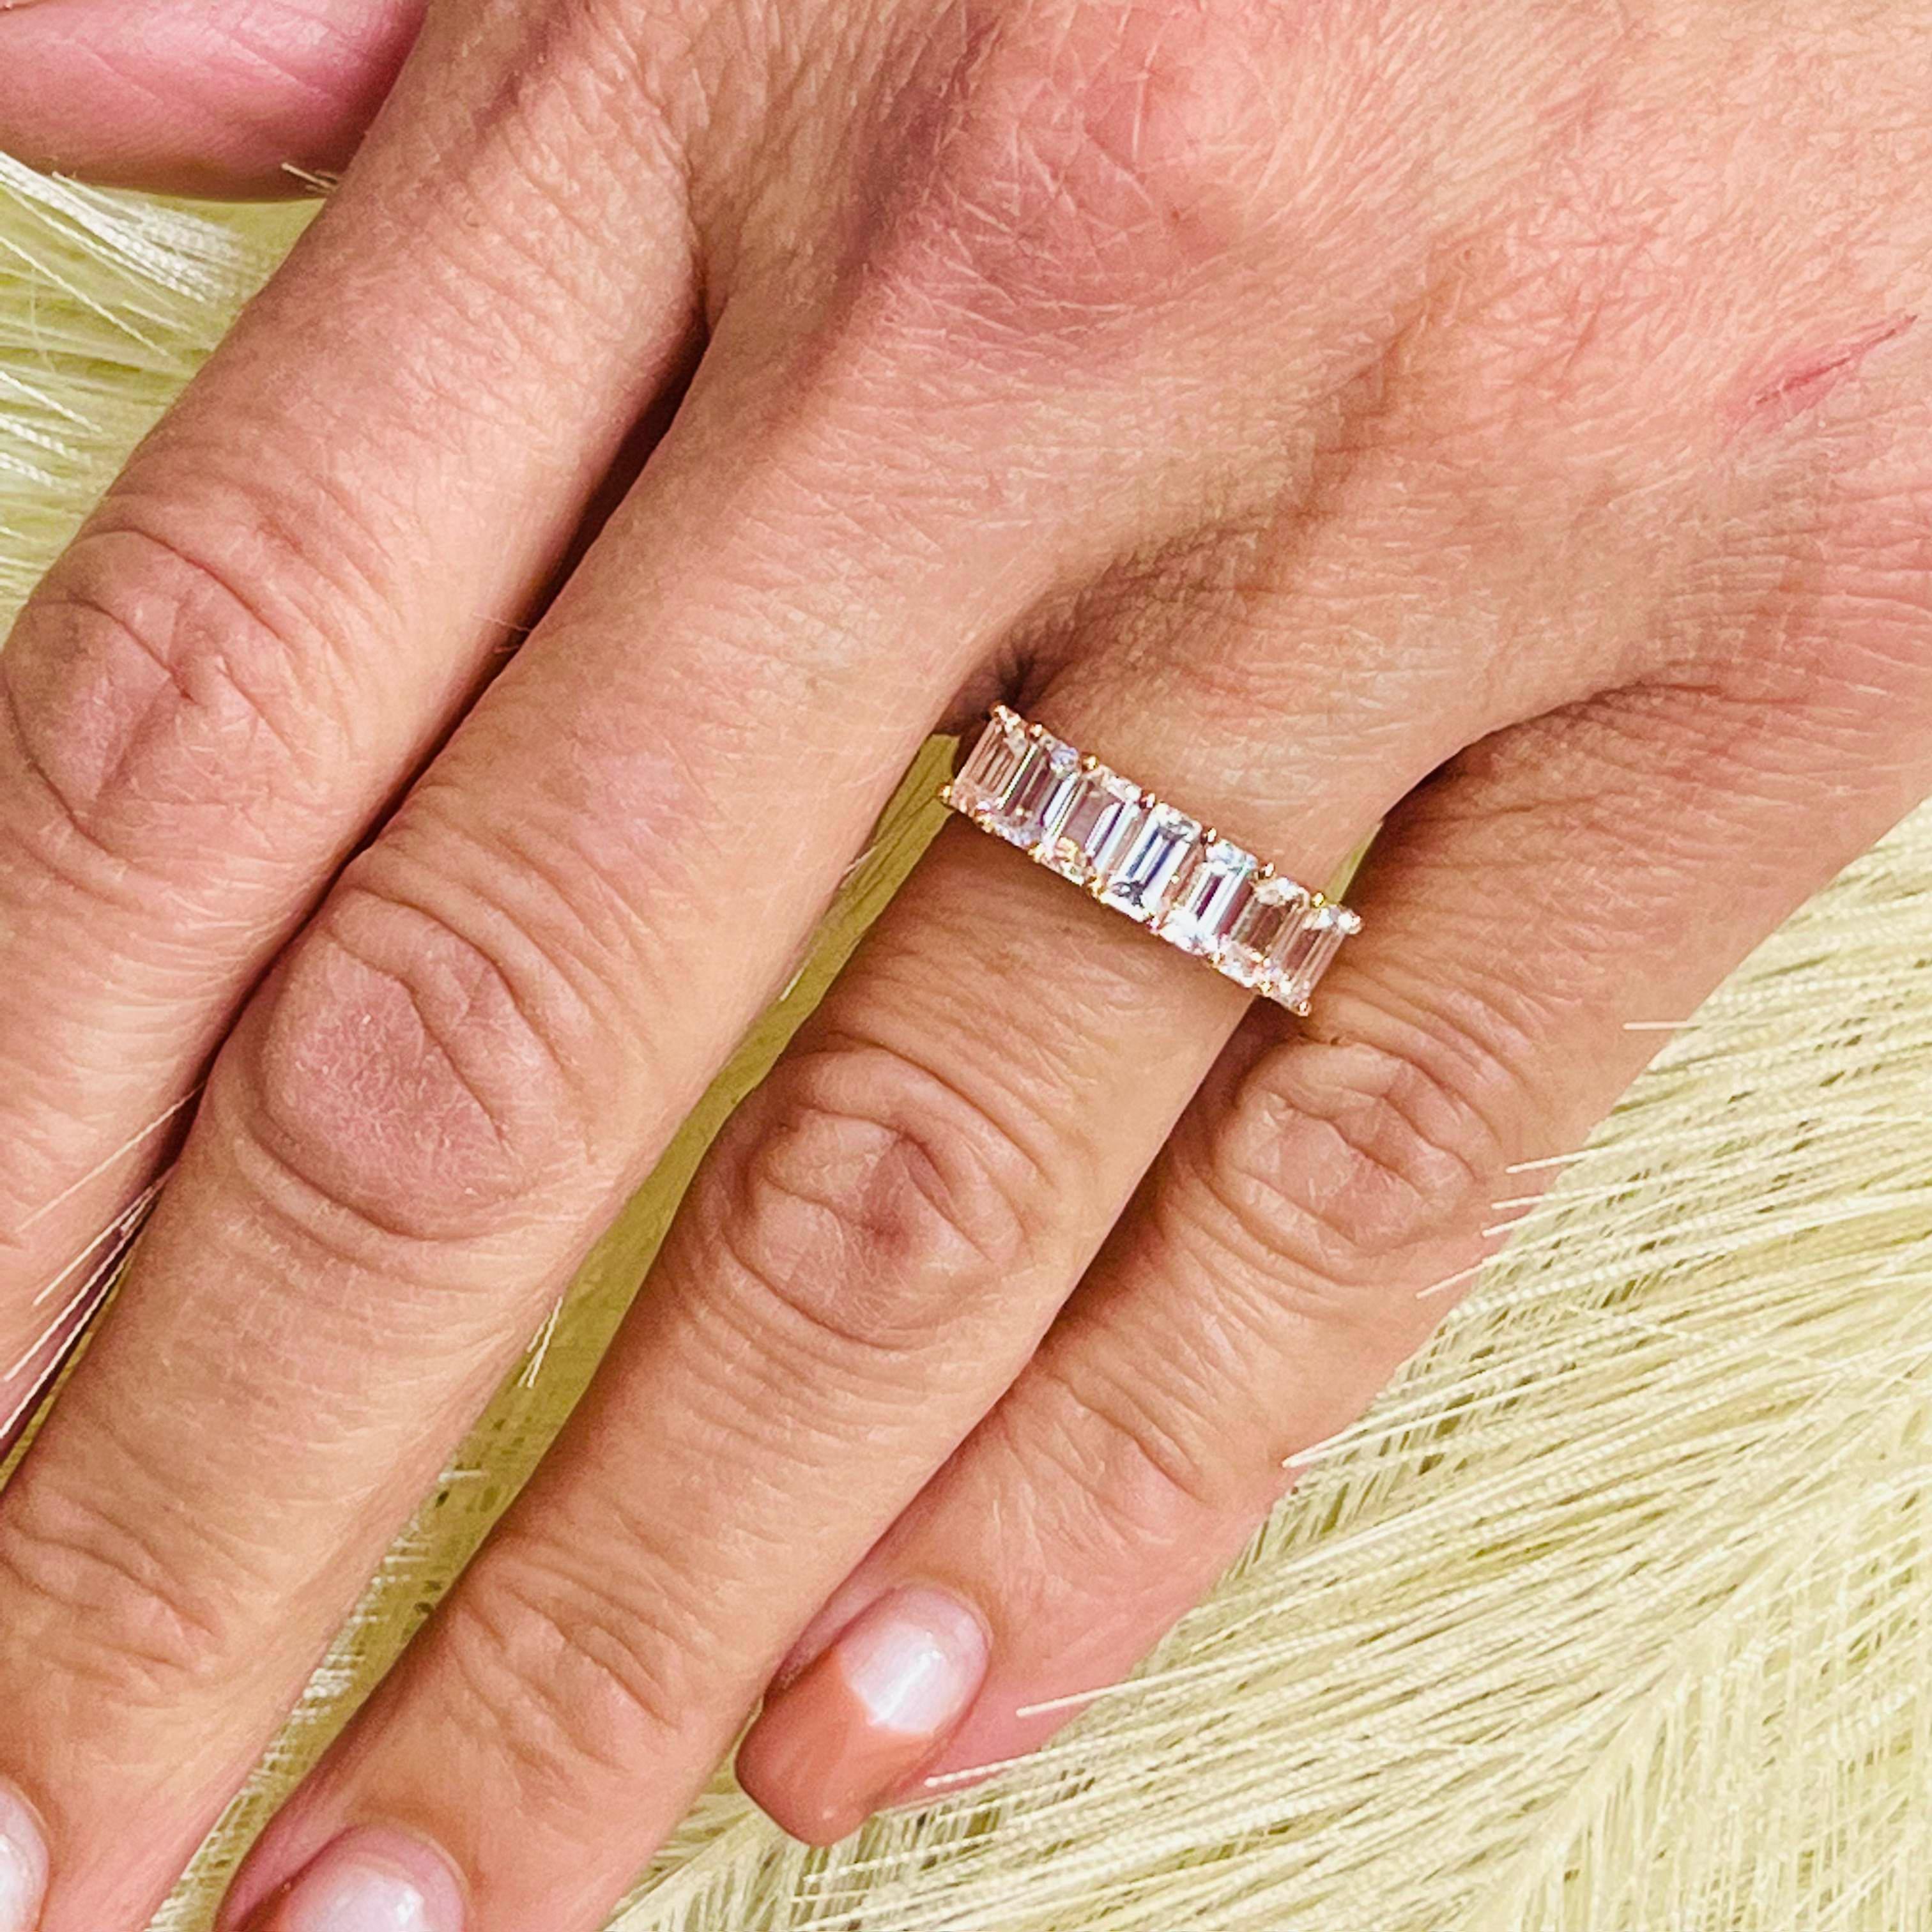 Natürlicher Saphir Ring Größe 6,5 14k R Gold 3,36 TCW zertifiziert $3.950 217067

Dies ist ein einzigartiges, maßgeschneidertes, glamouröses Schmuckstück!

Nichts sagt mehr 